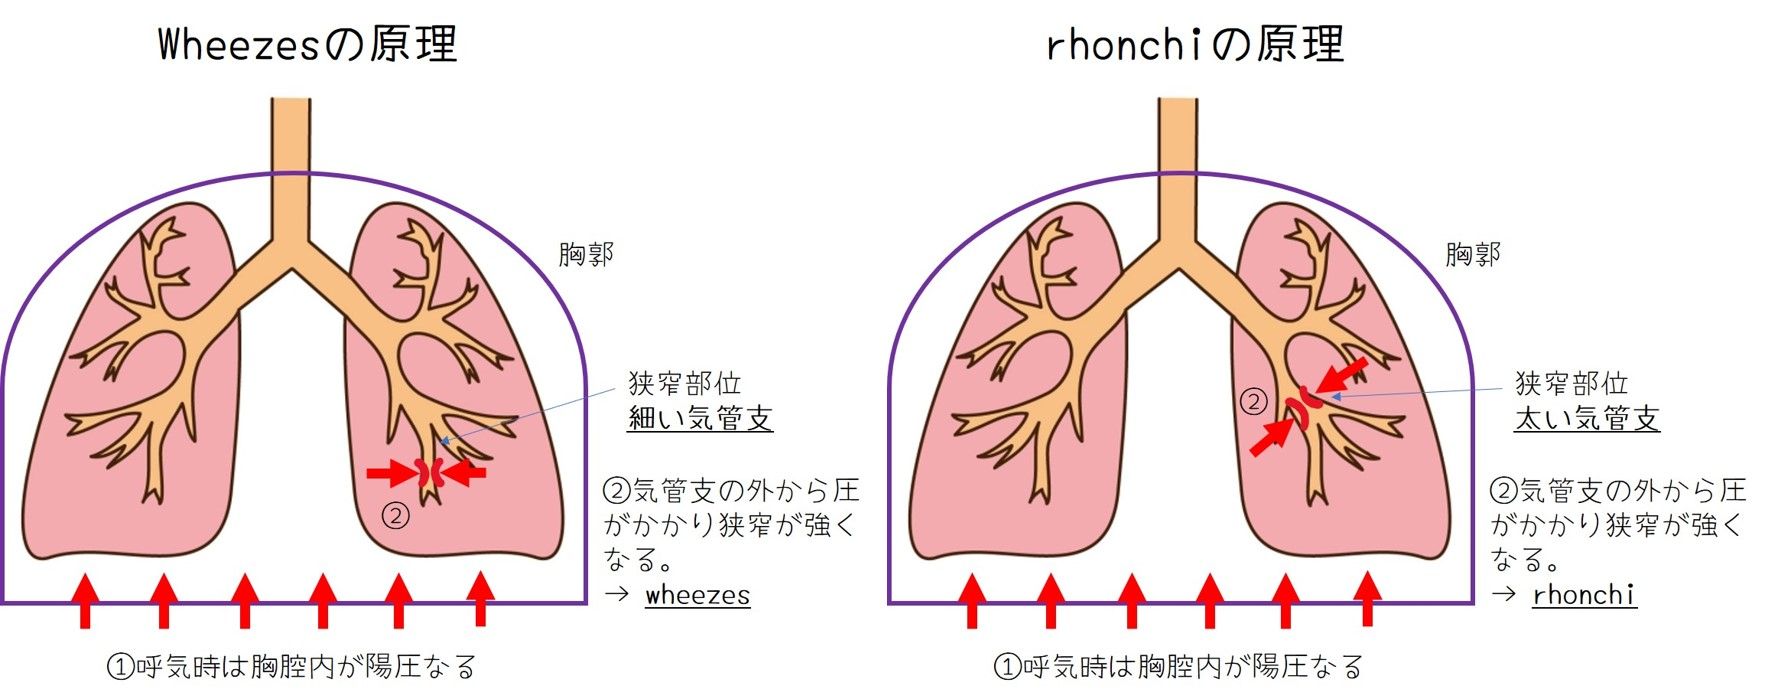 イメージ：rhonchiとwheezesから気道狭窄の部位と病態を予測